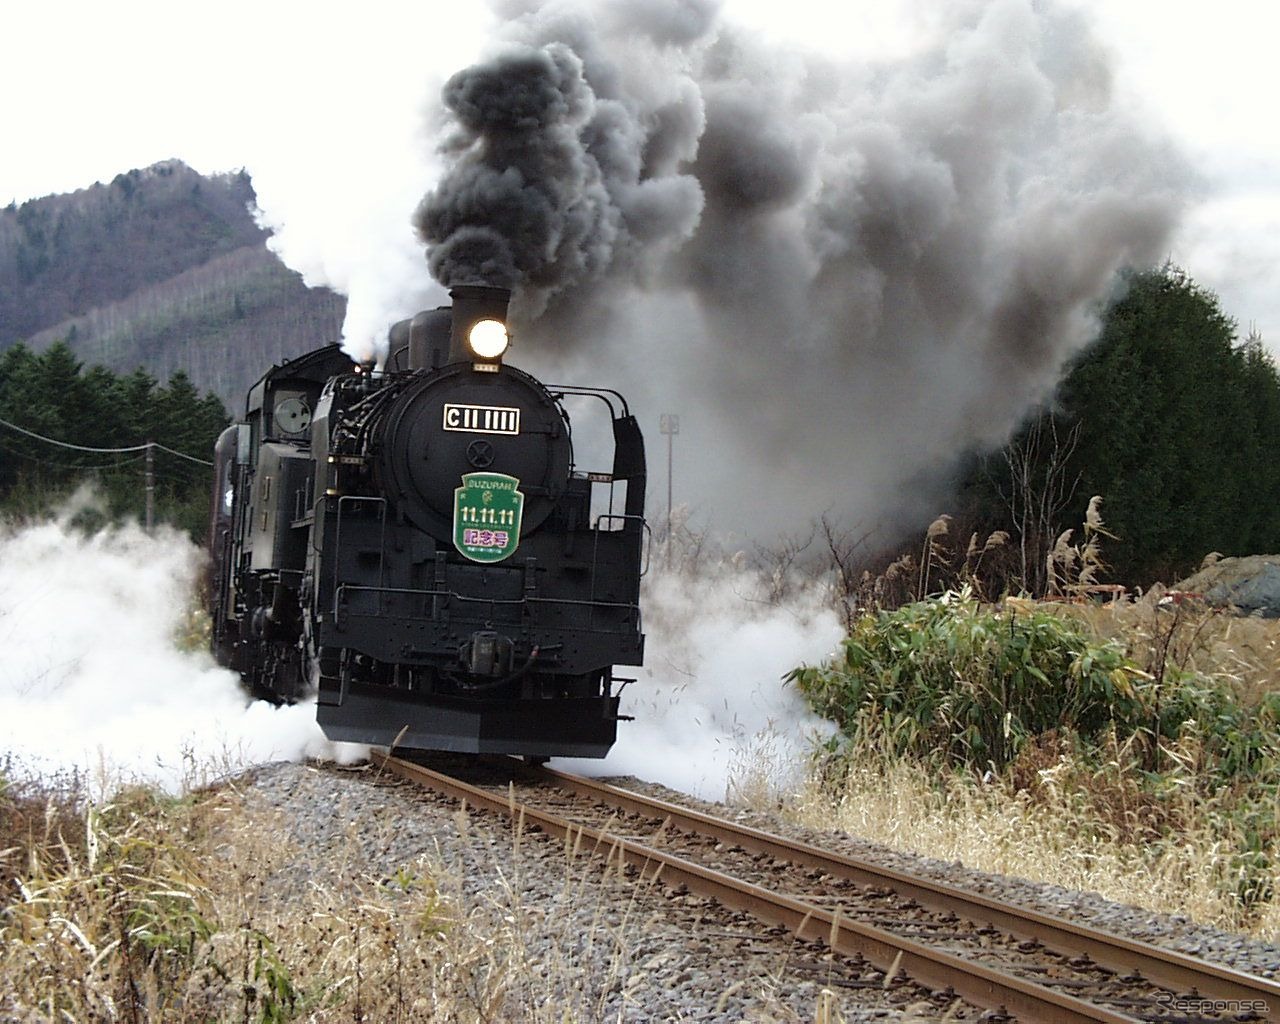 1999年11月11日の日付が元号で「11.11.11」のぞろ目となったことを記念して留萌本線で運行されたSL列車。留萌本線峠下～恵比島。